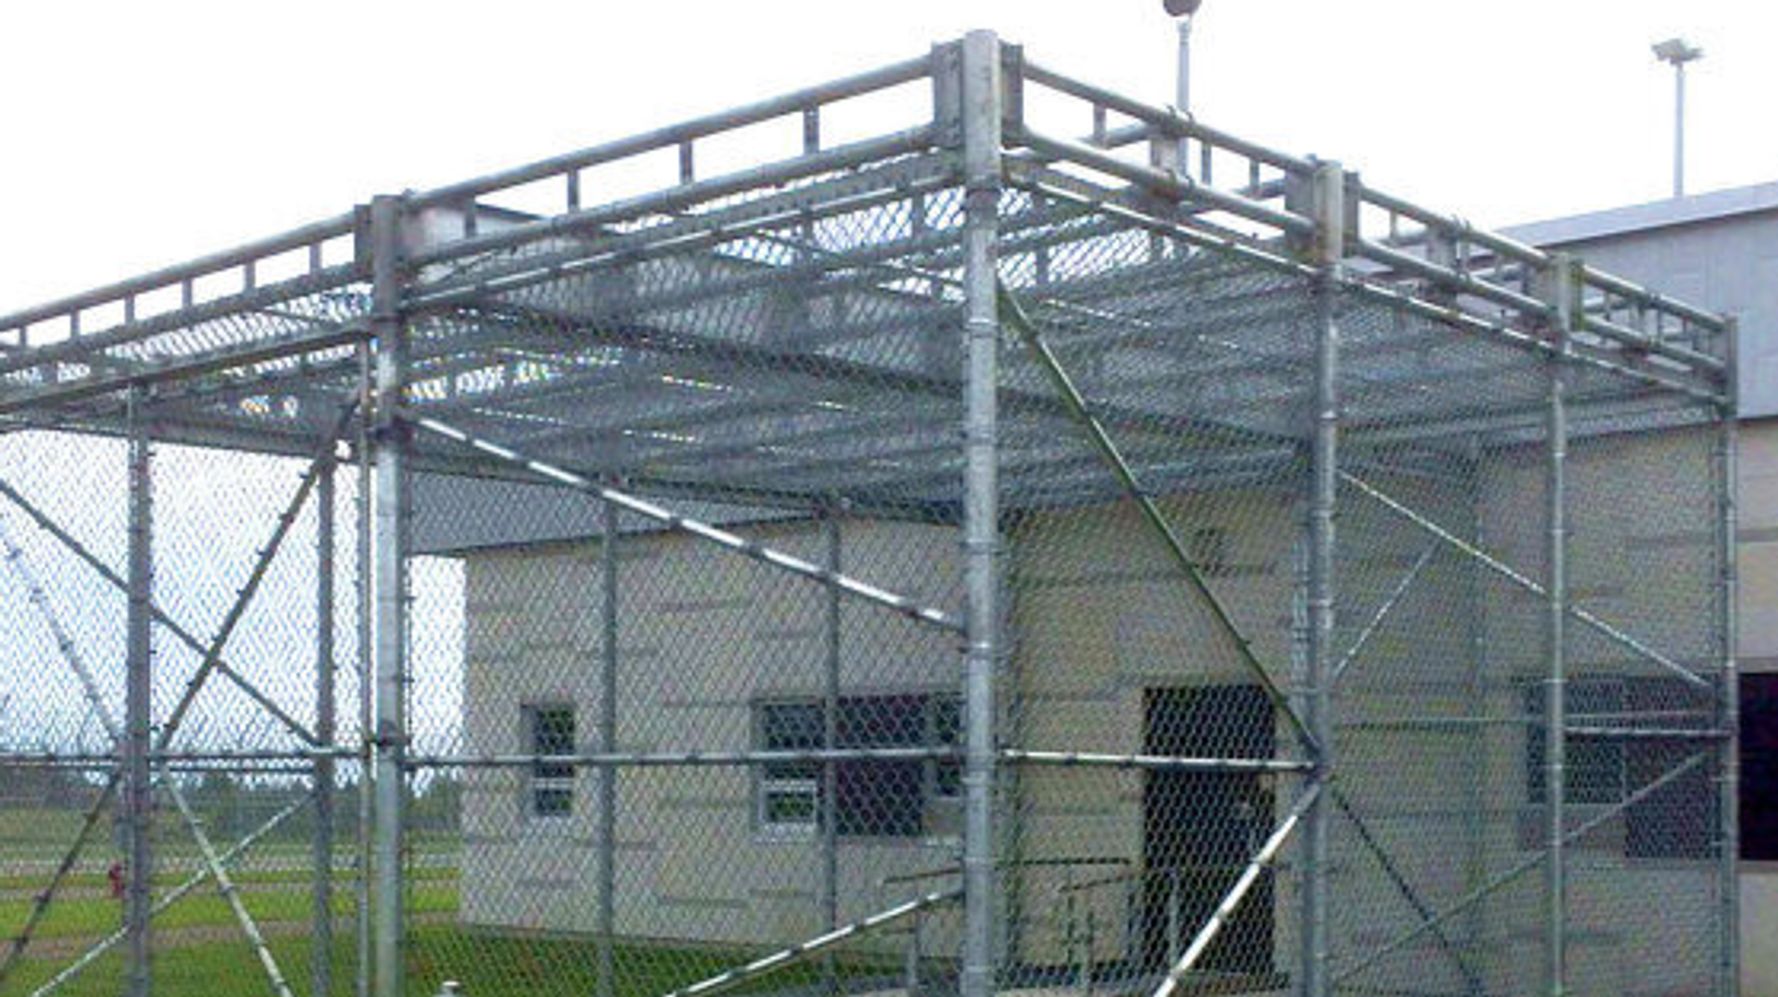 Système de brouillage, fin du quartier VIP et cour végétalisée : la prison  de la Santé rénovée accueille ses premiers détenus